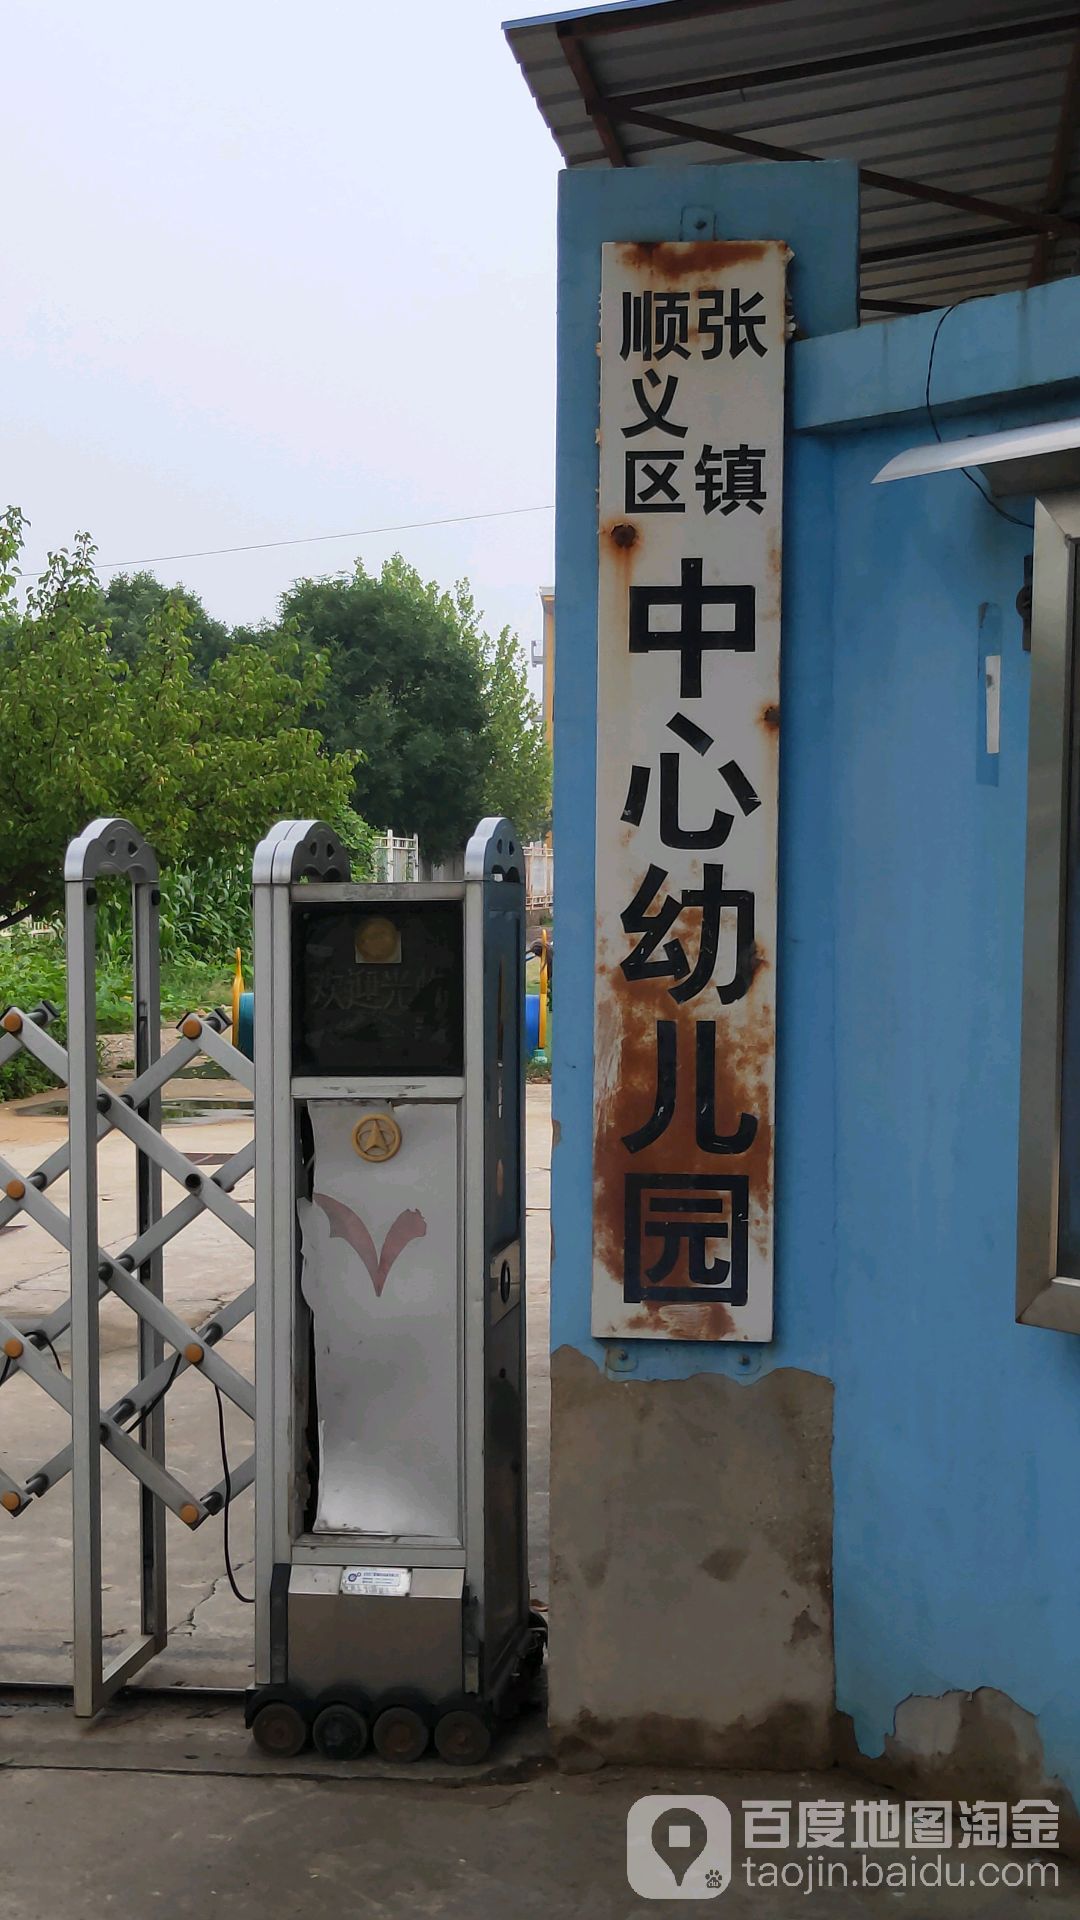 张镇顺义区中心幼儿园的图片